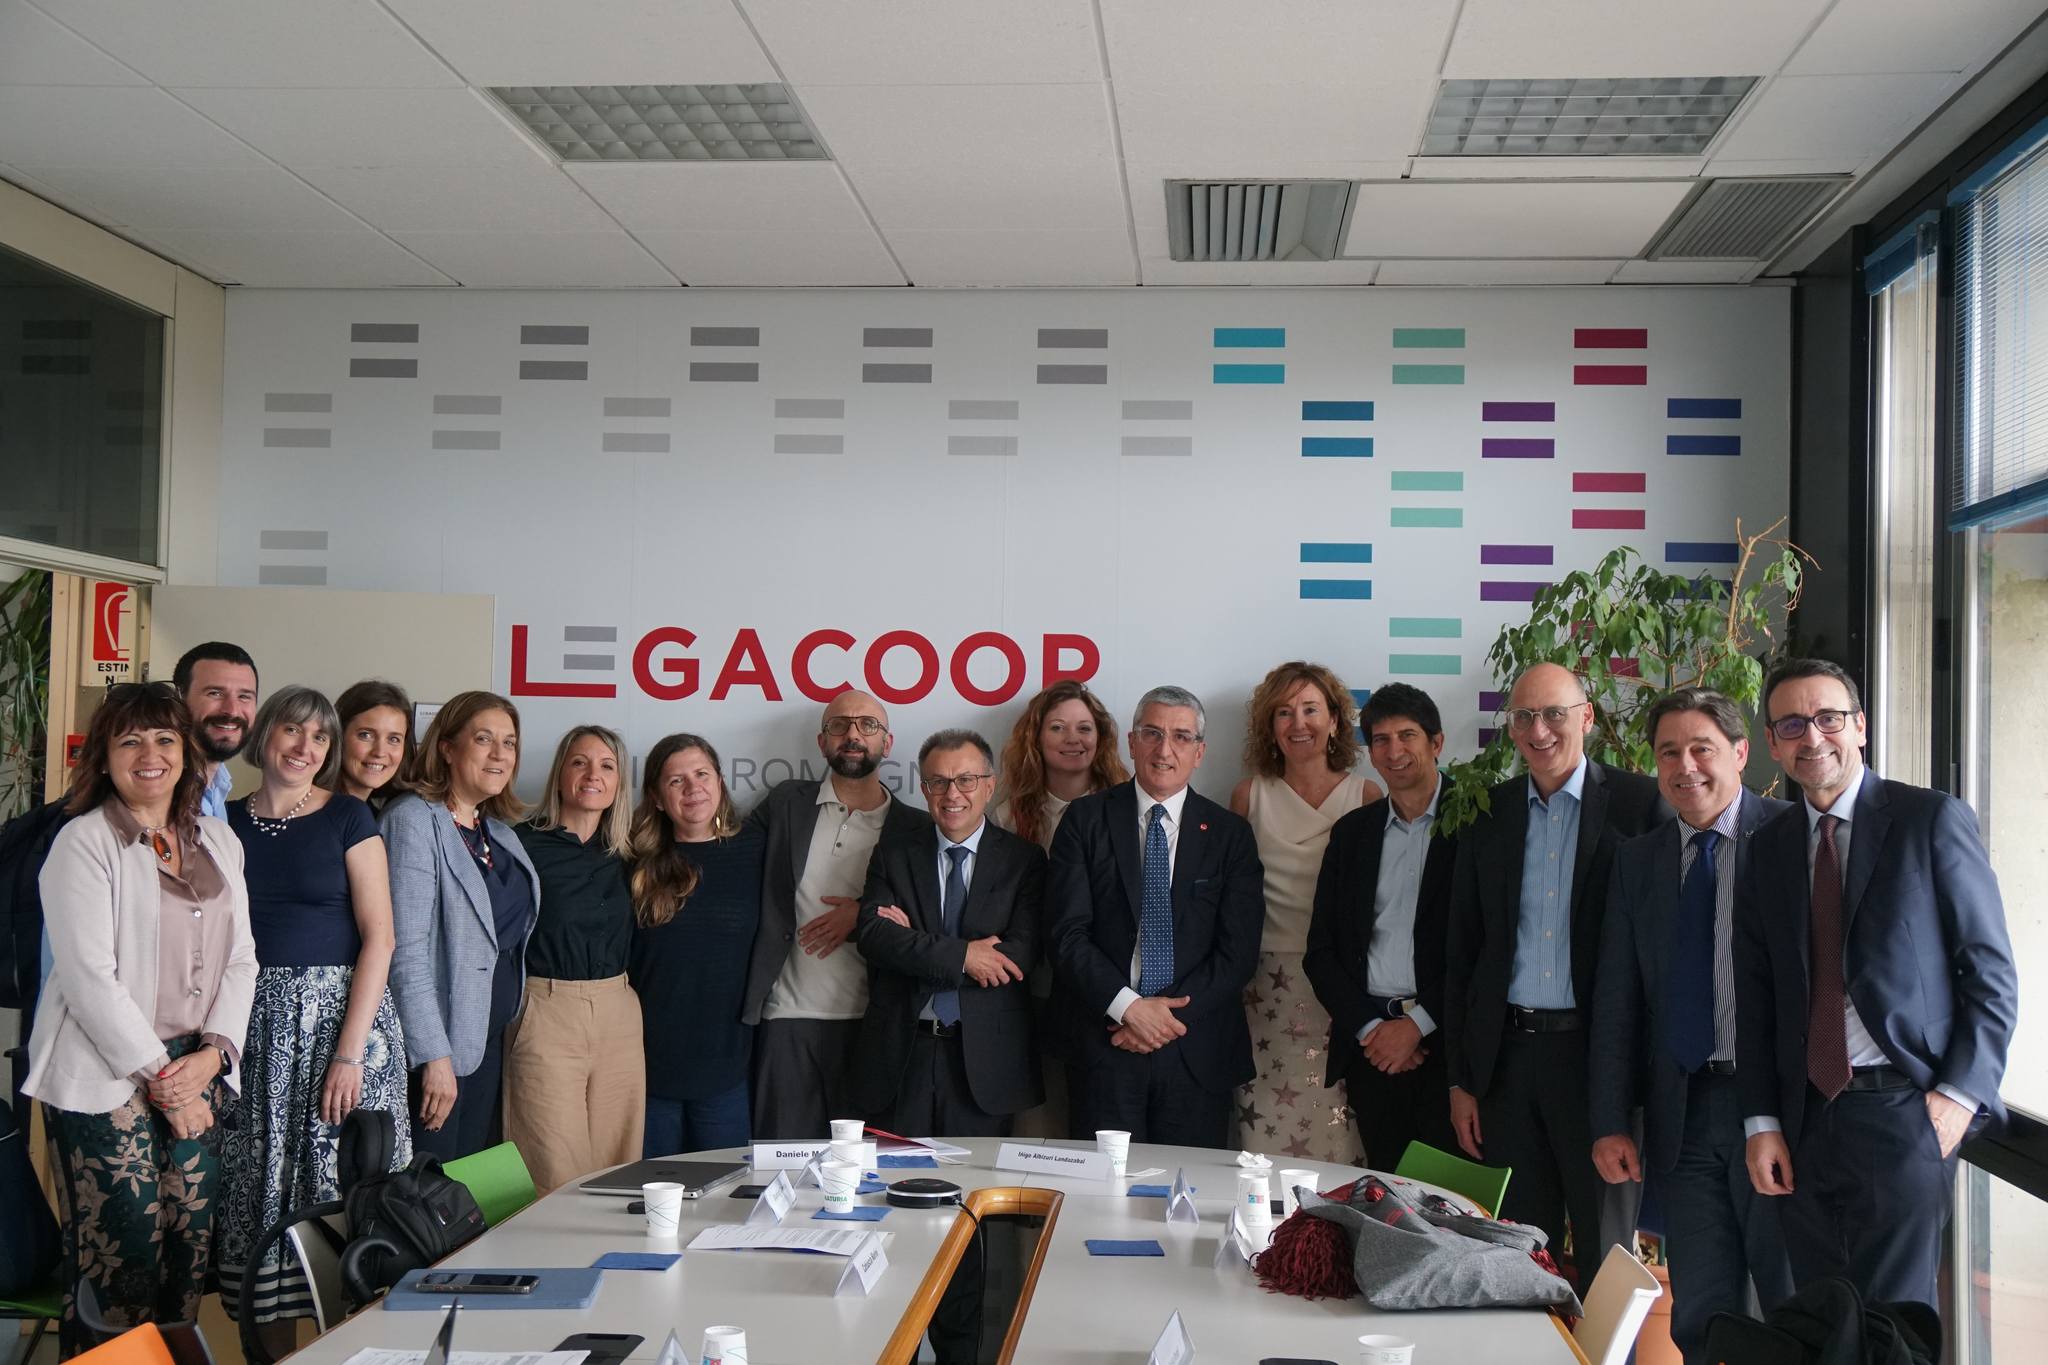 Legacoop e Mondragon Corporation siglano protocollo di intesa per promuovere il modello cooperativo in Europa